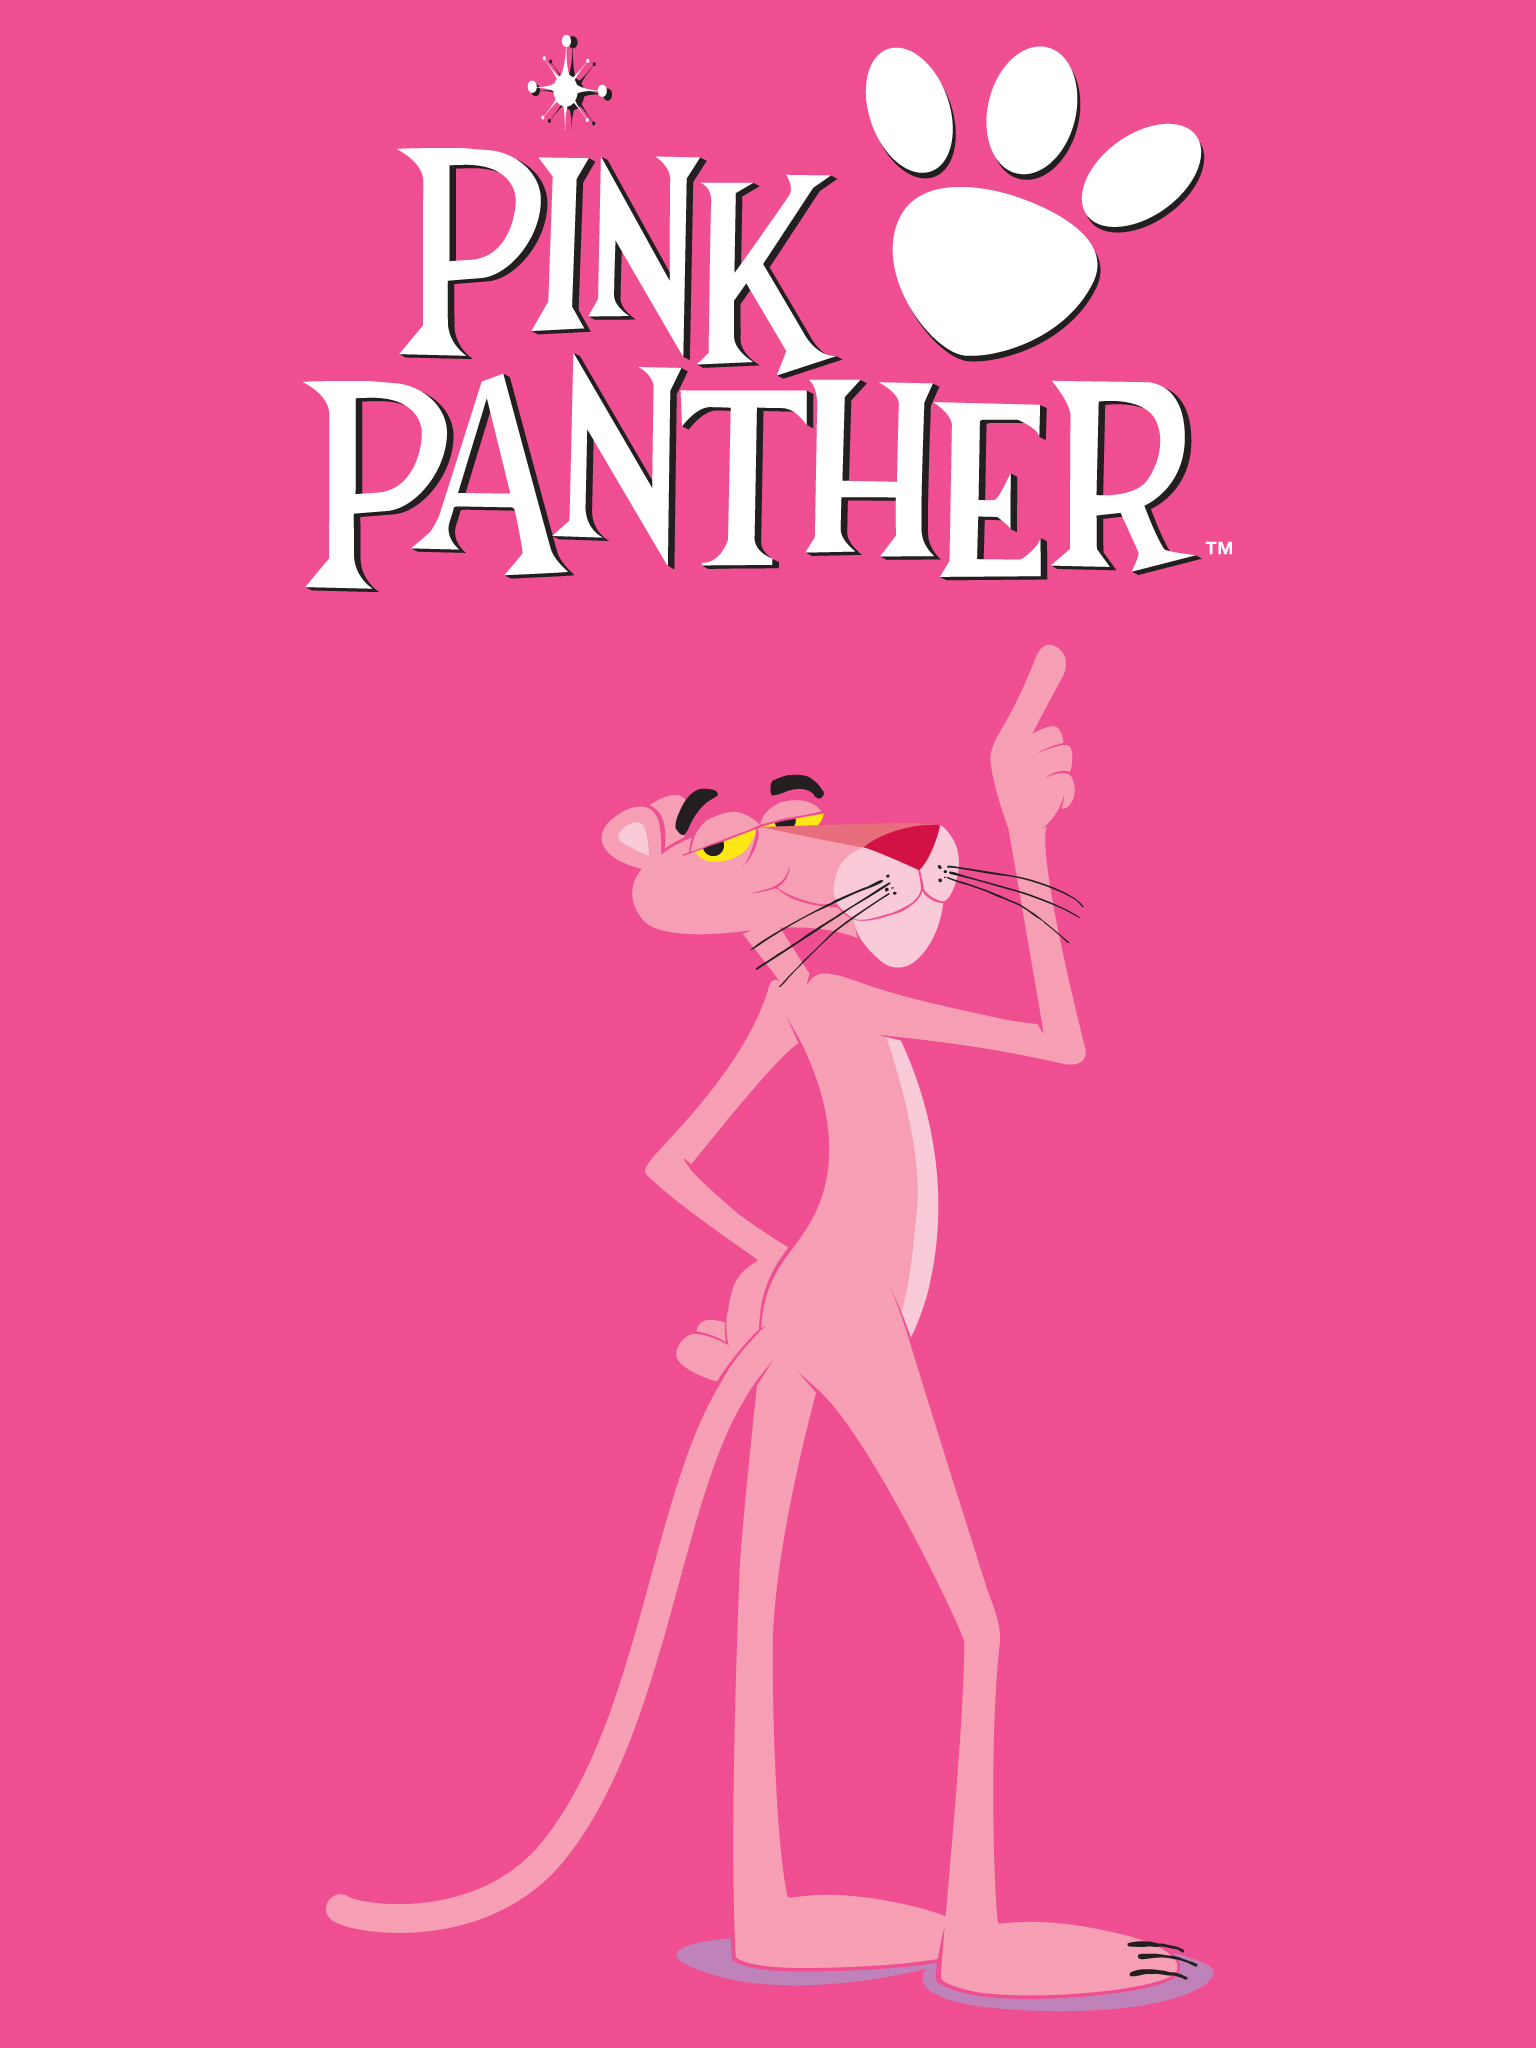 Pink panther watch cartoon. Розовая пантера 1969. Розовая пантера фото. Розовые плакаты. Розовая пантера плакат.